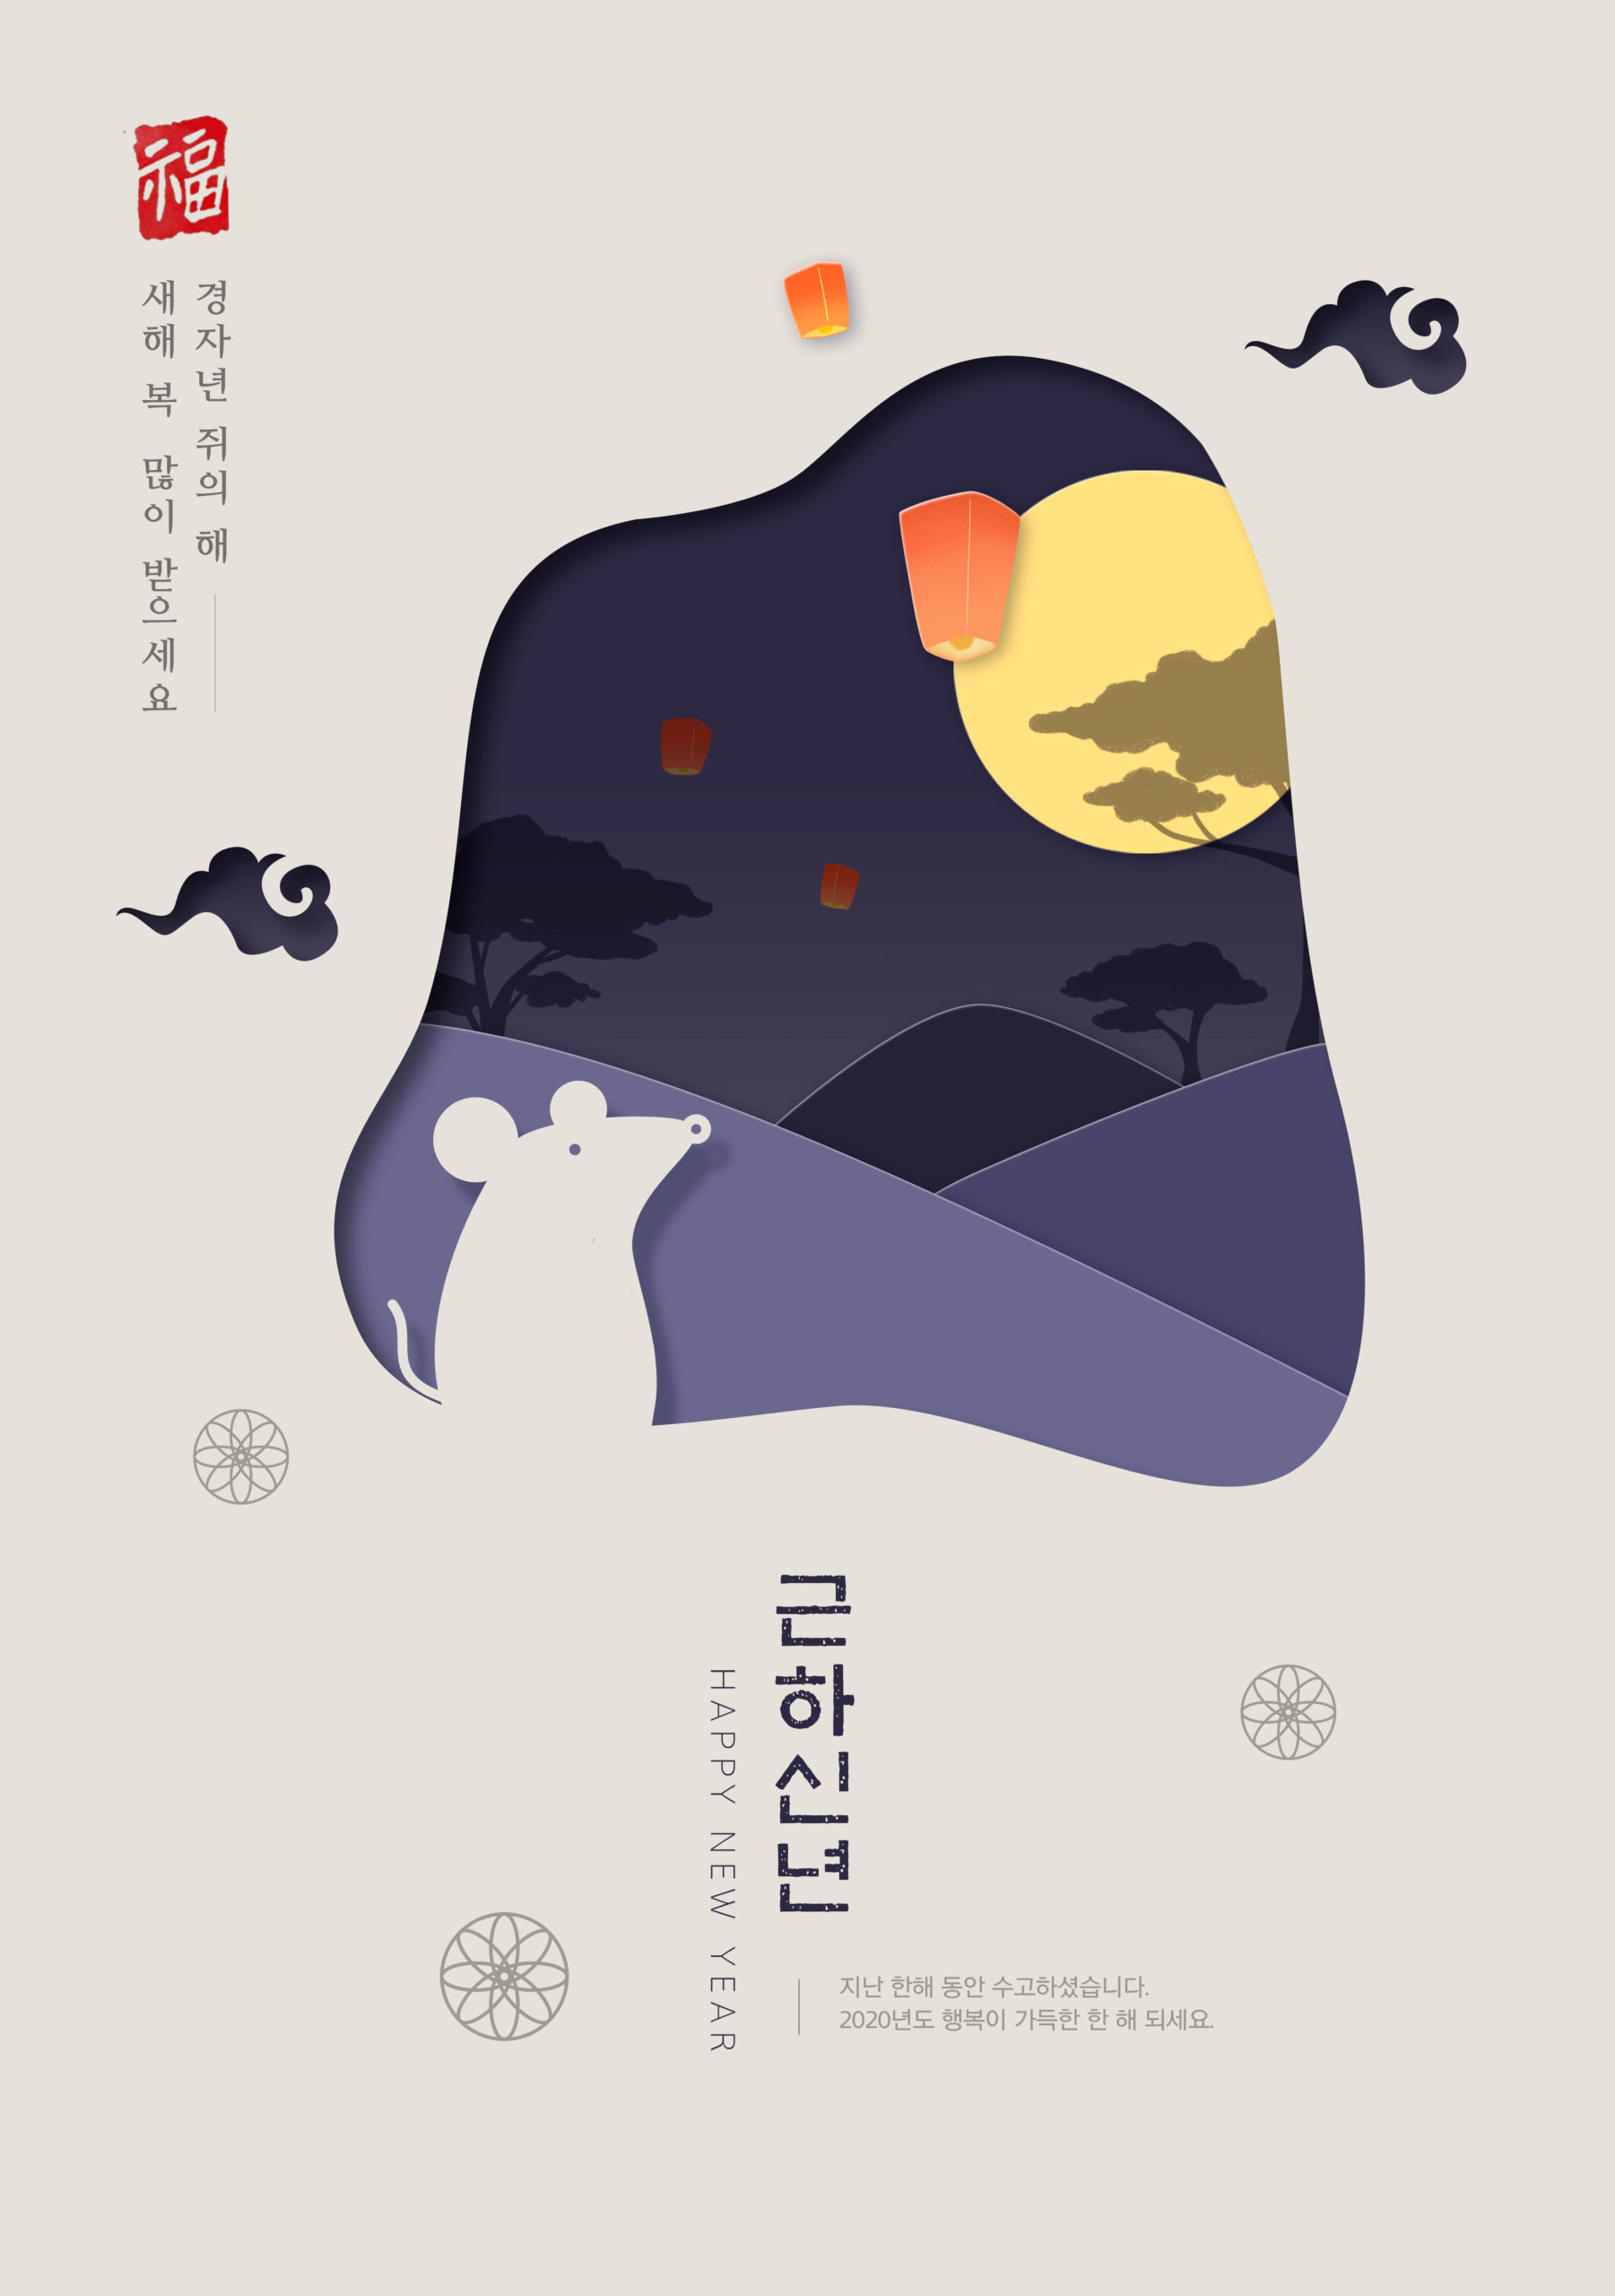 鼠年新春主题韩国海报PSD素材素材中国精选模板插图